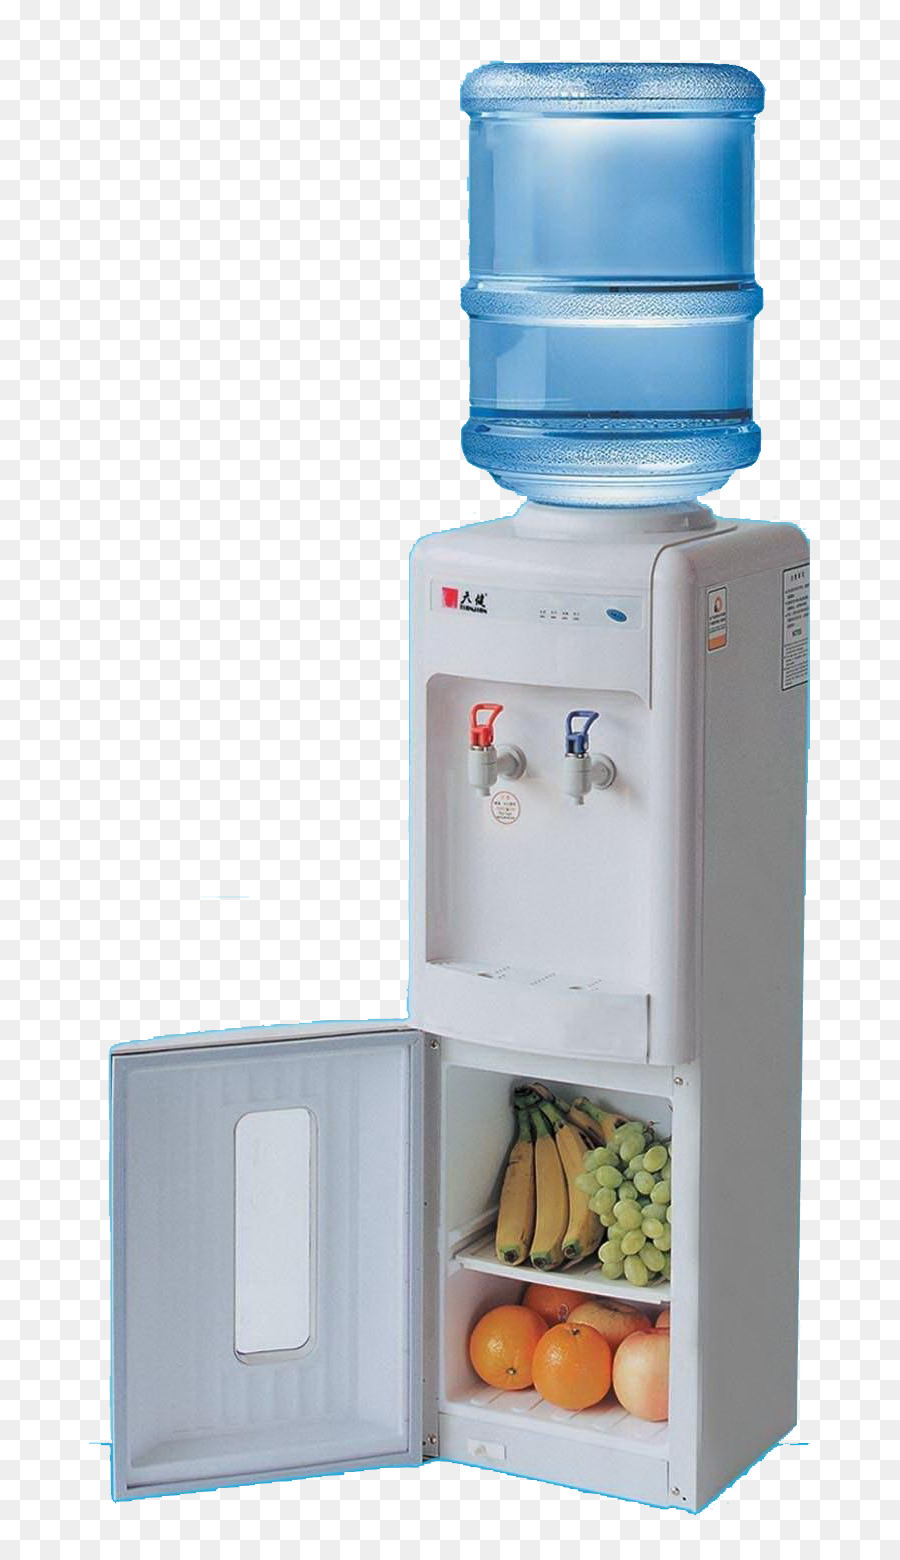 Acqua minerale, Acqua di raffreddamento di Filtrazione - acqua minerale macchina